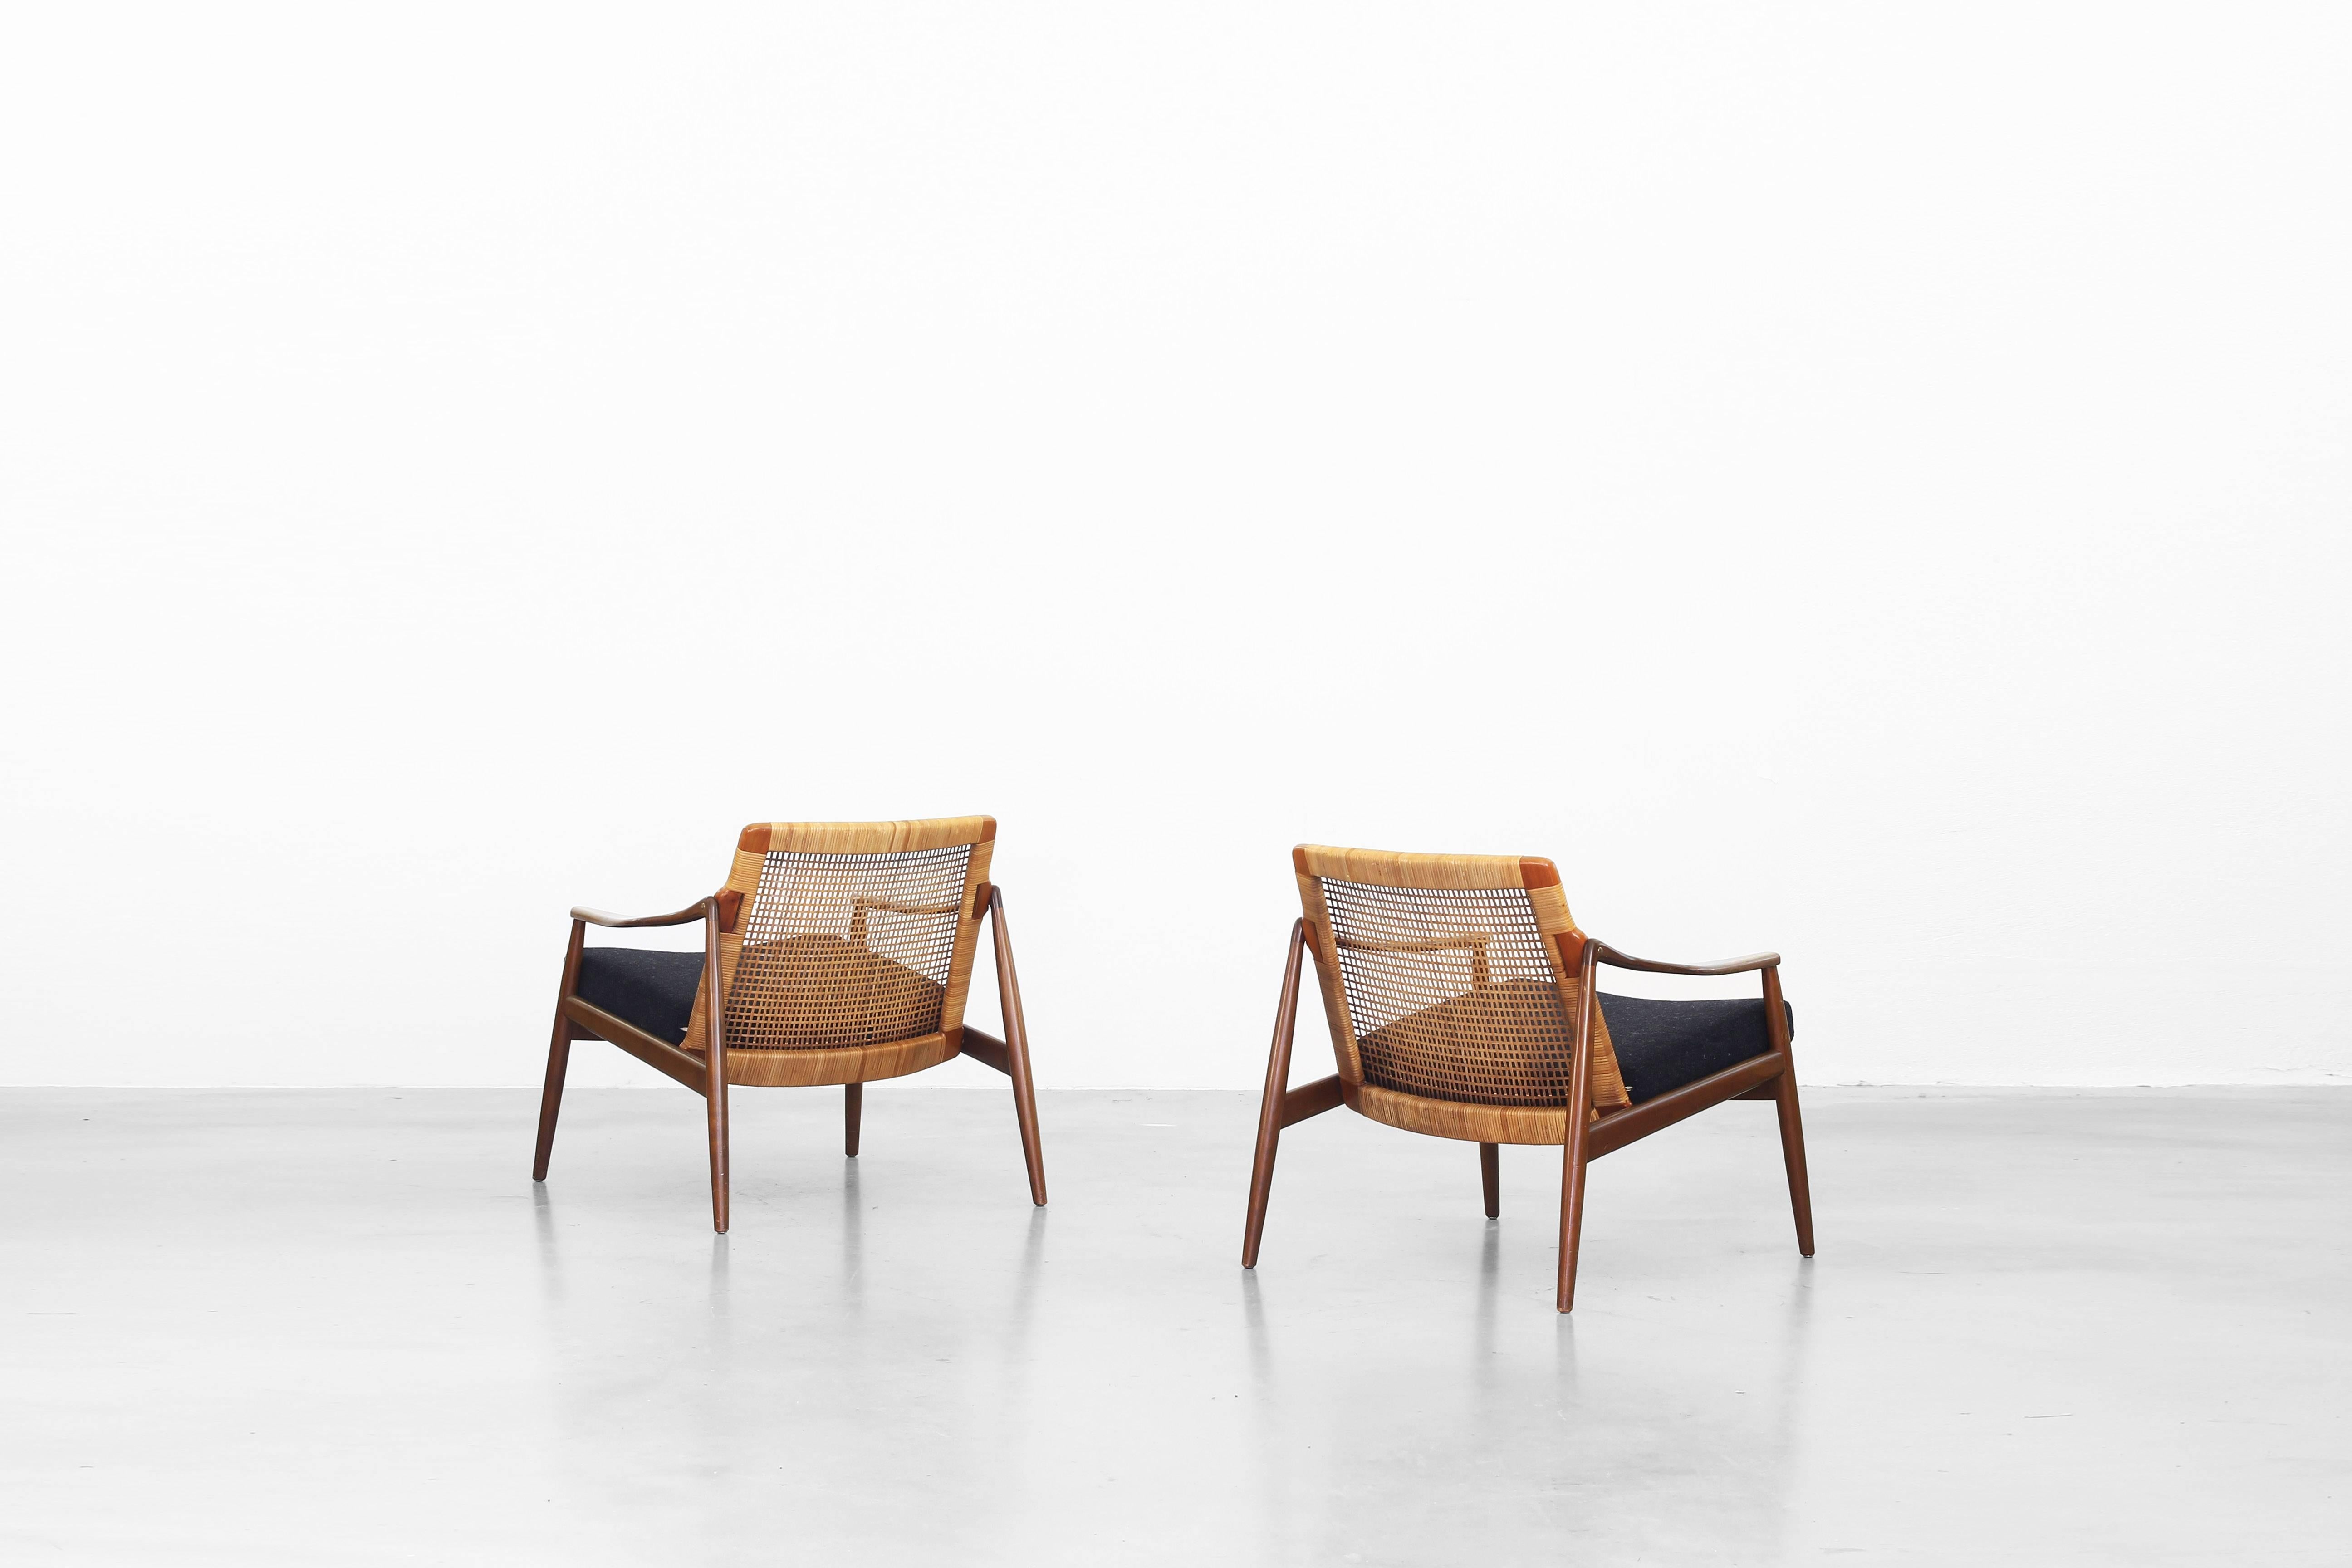 Schönes Paar Lounge-Sessel von Hartmut Lohmeyer für Wilkhahn (20. Jahrhundert)